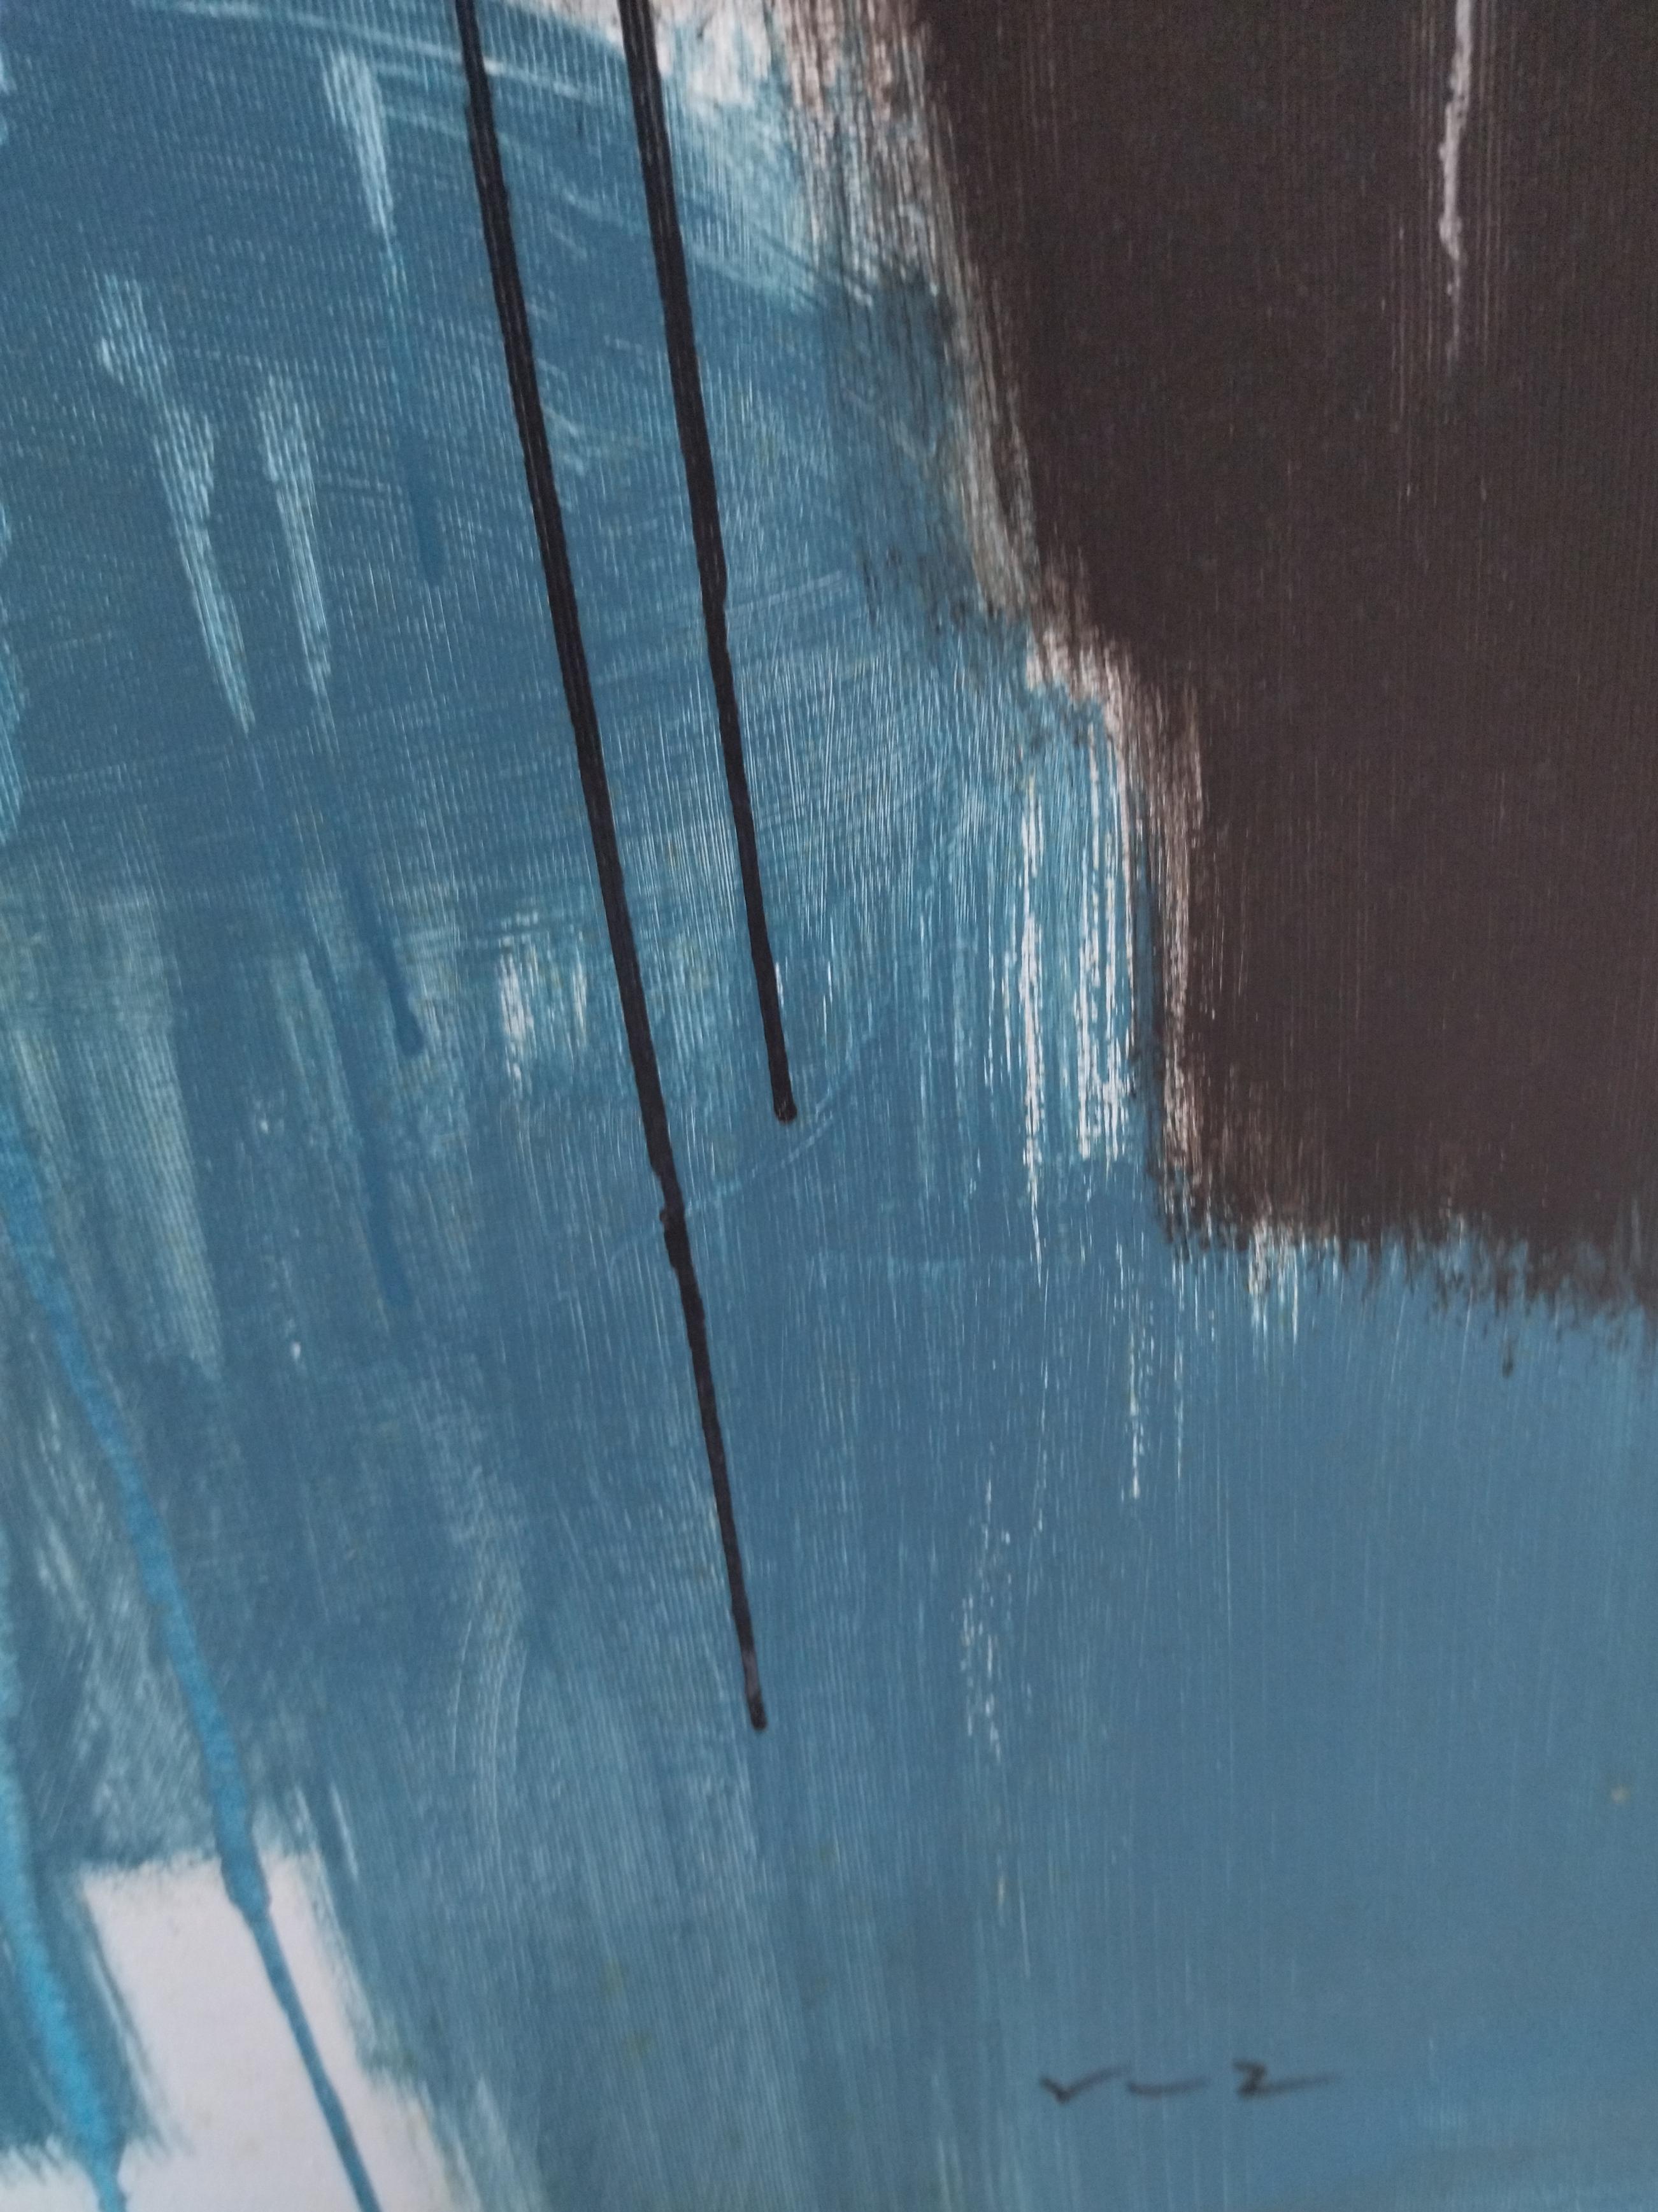 Ruz  Noir  Golden   Jaune  Bleu   toile abstraite originale peinture acrylique en vente 10